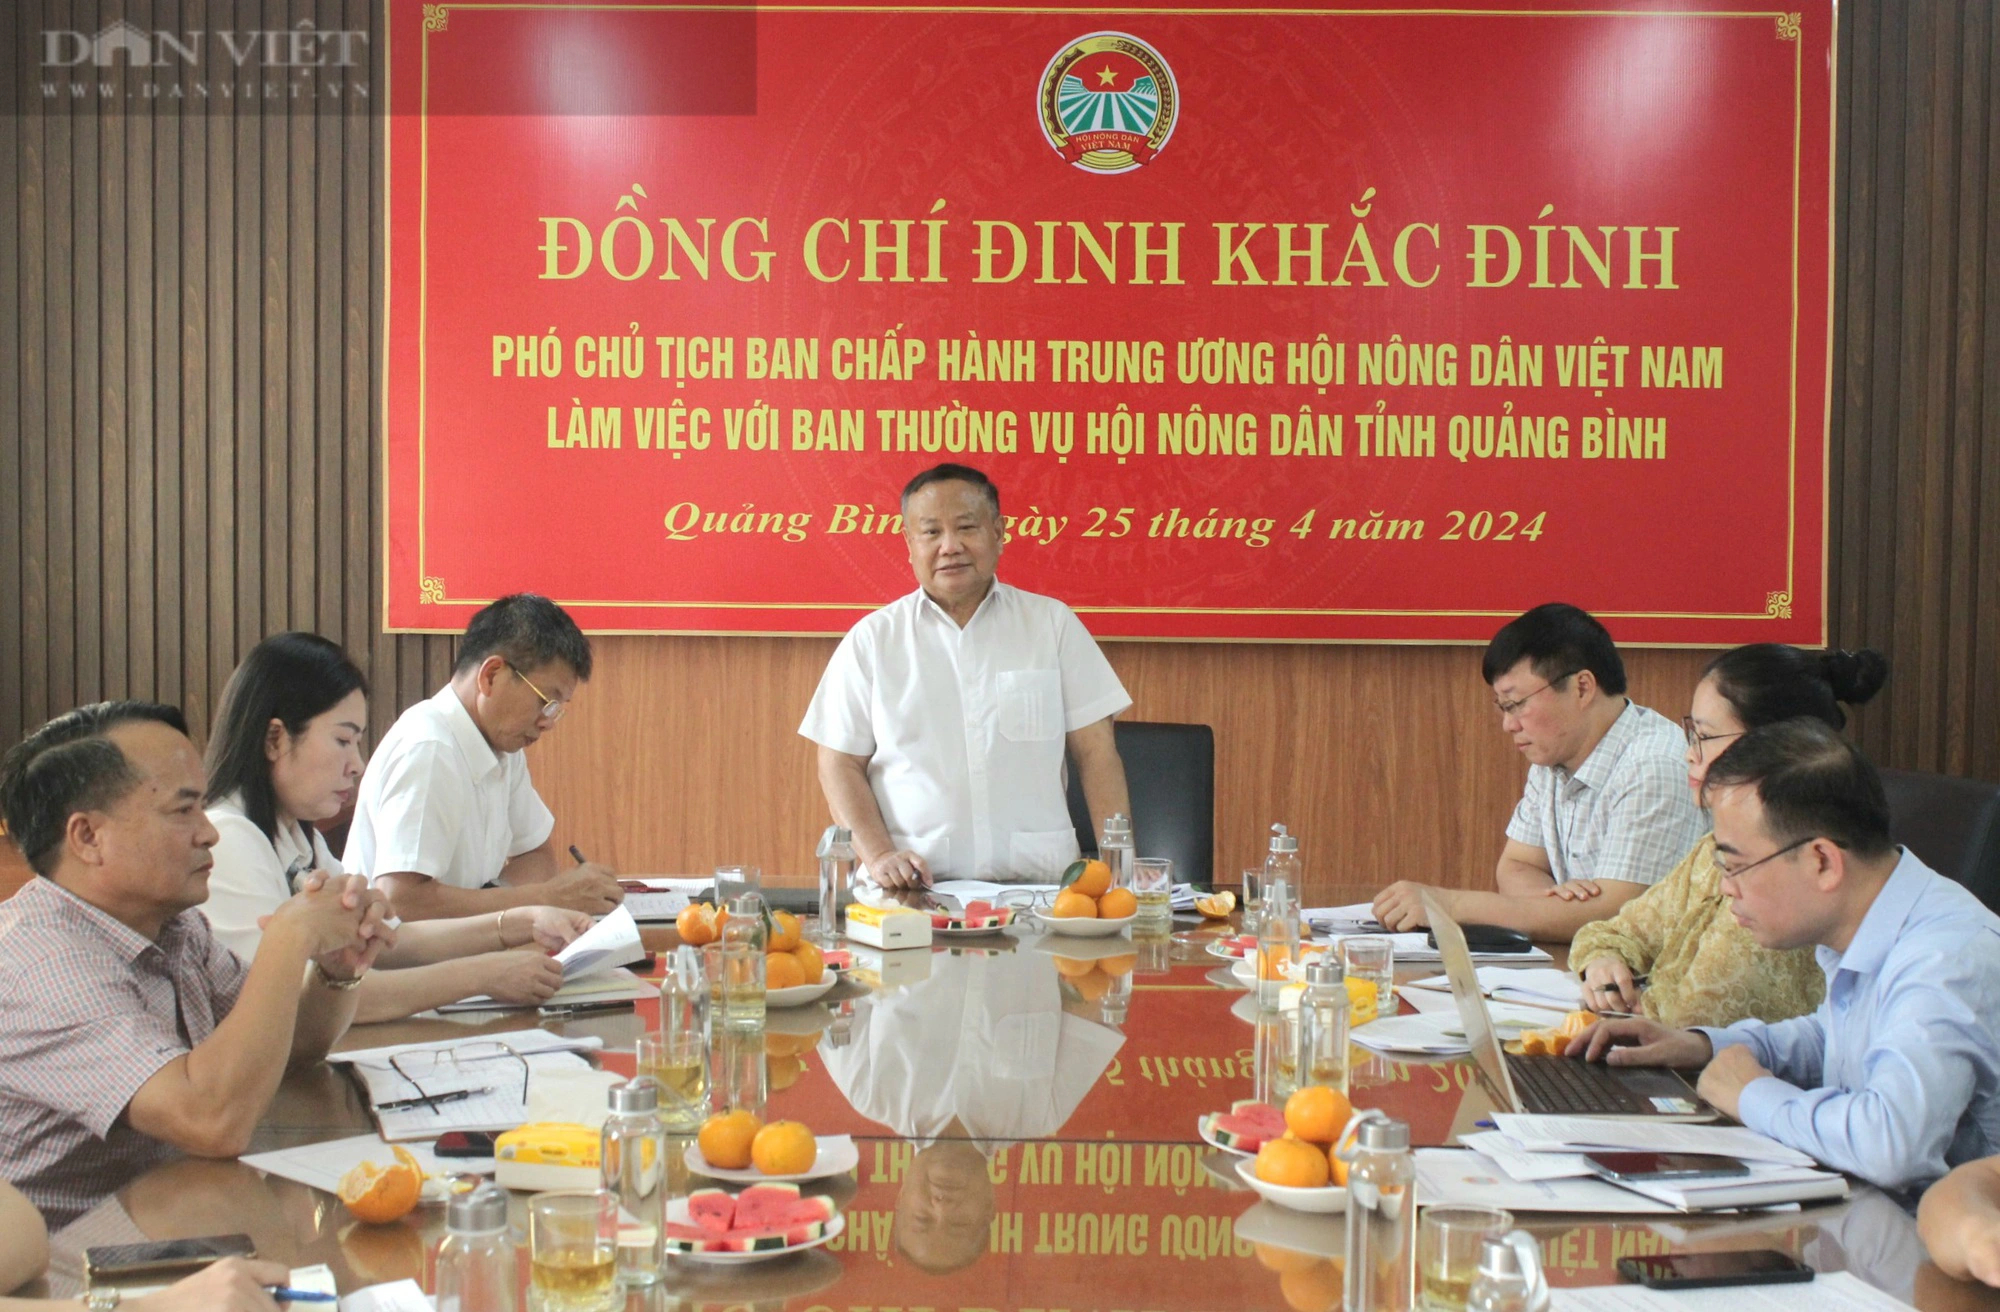 Phó Chủ tịch Hội NDVN Đinh Khắc Đính làm việc với Hội Nông dân Quảng Bình- Ảnh 1.